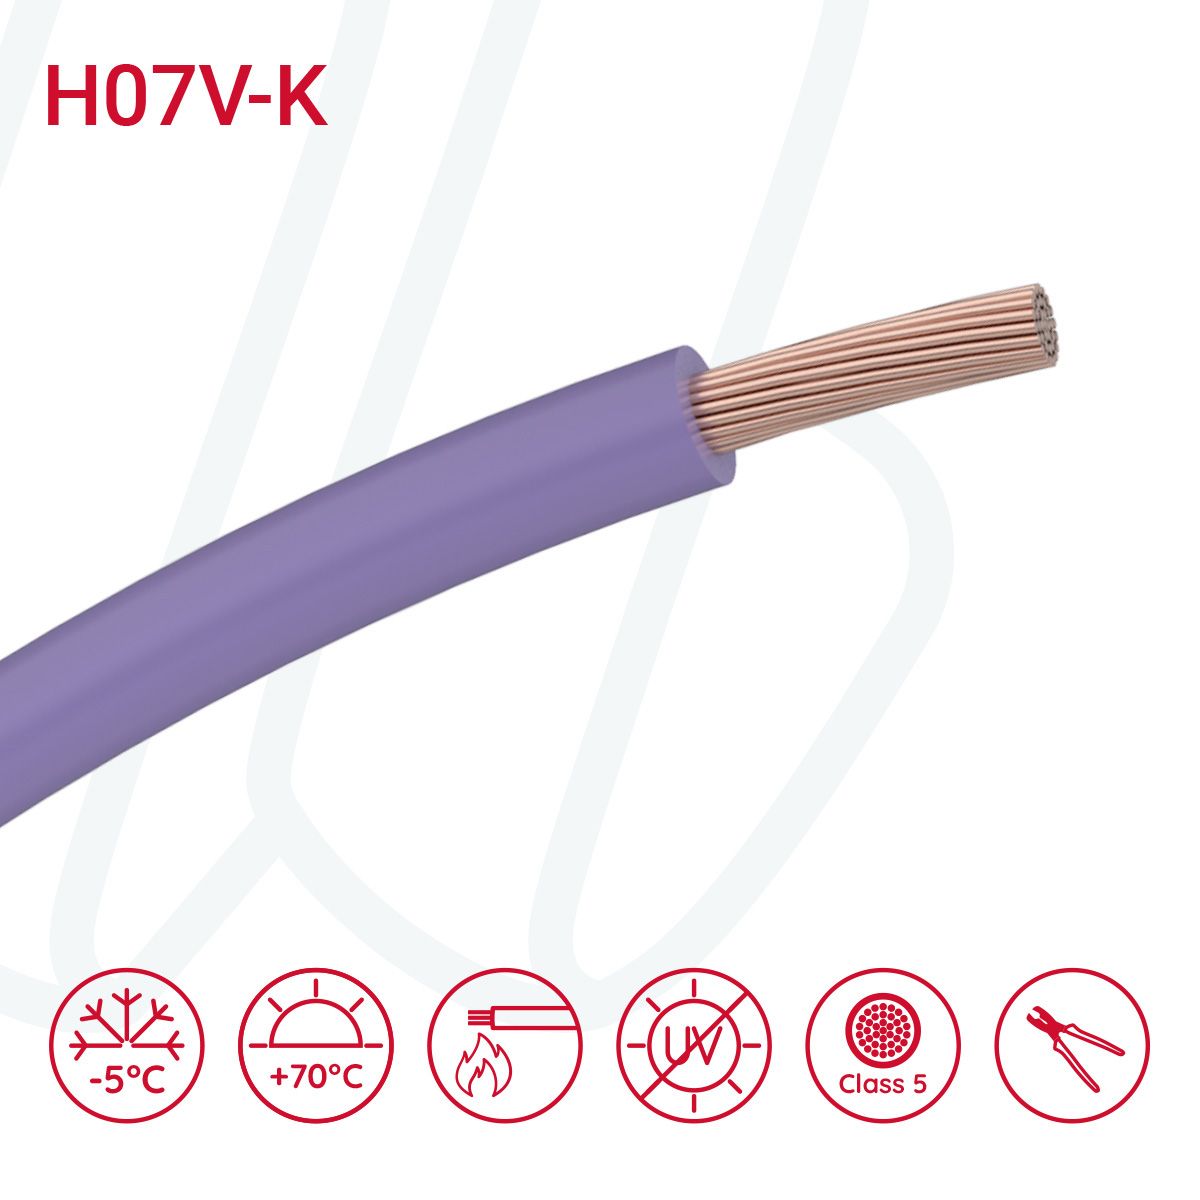 Провід монтажний гнучкий H07V-K 6 мм² фіолетовий, 01, 6